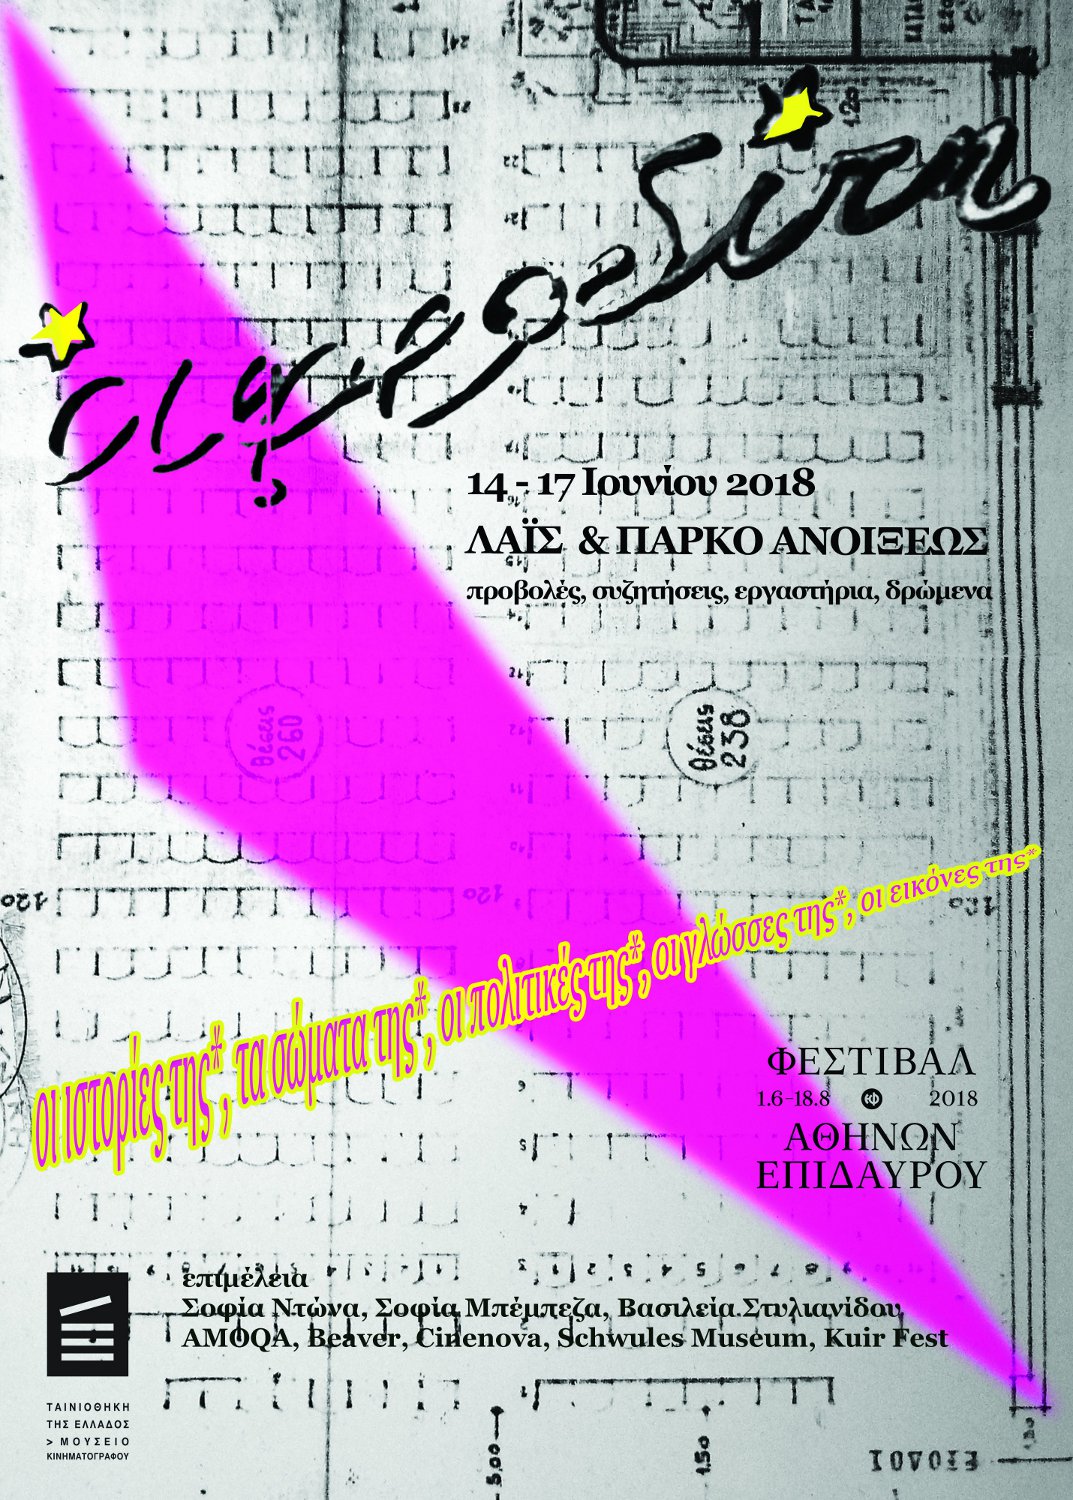 Η αφίσα του προγράμματος «Αφροδίτη*» που πραγματοποιήθηκε από 14/06 έως 17/06/2018 στο πλαίσιο του Φεστιβάλ Αθηνών και Επιδαύρου